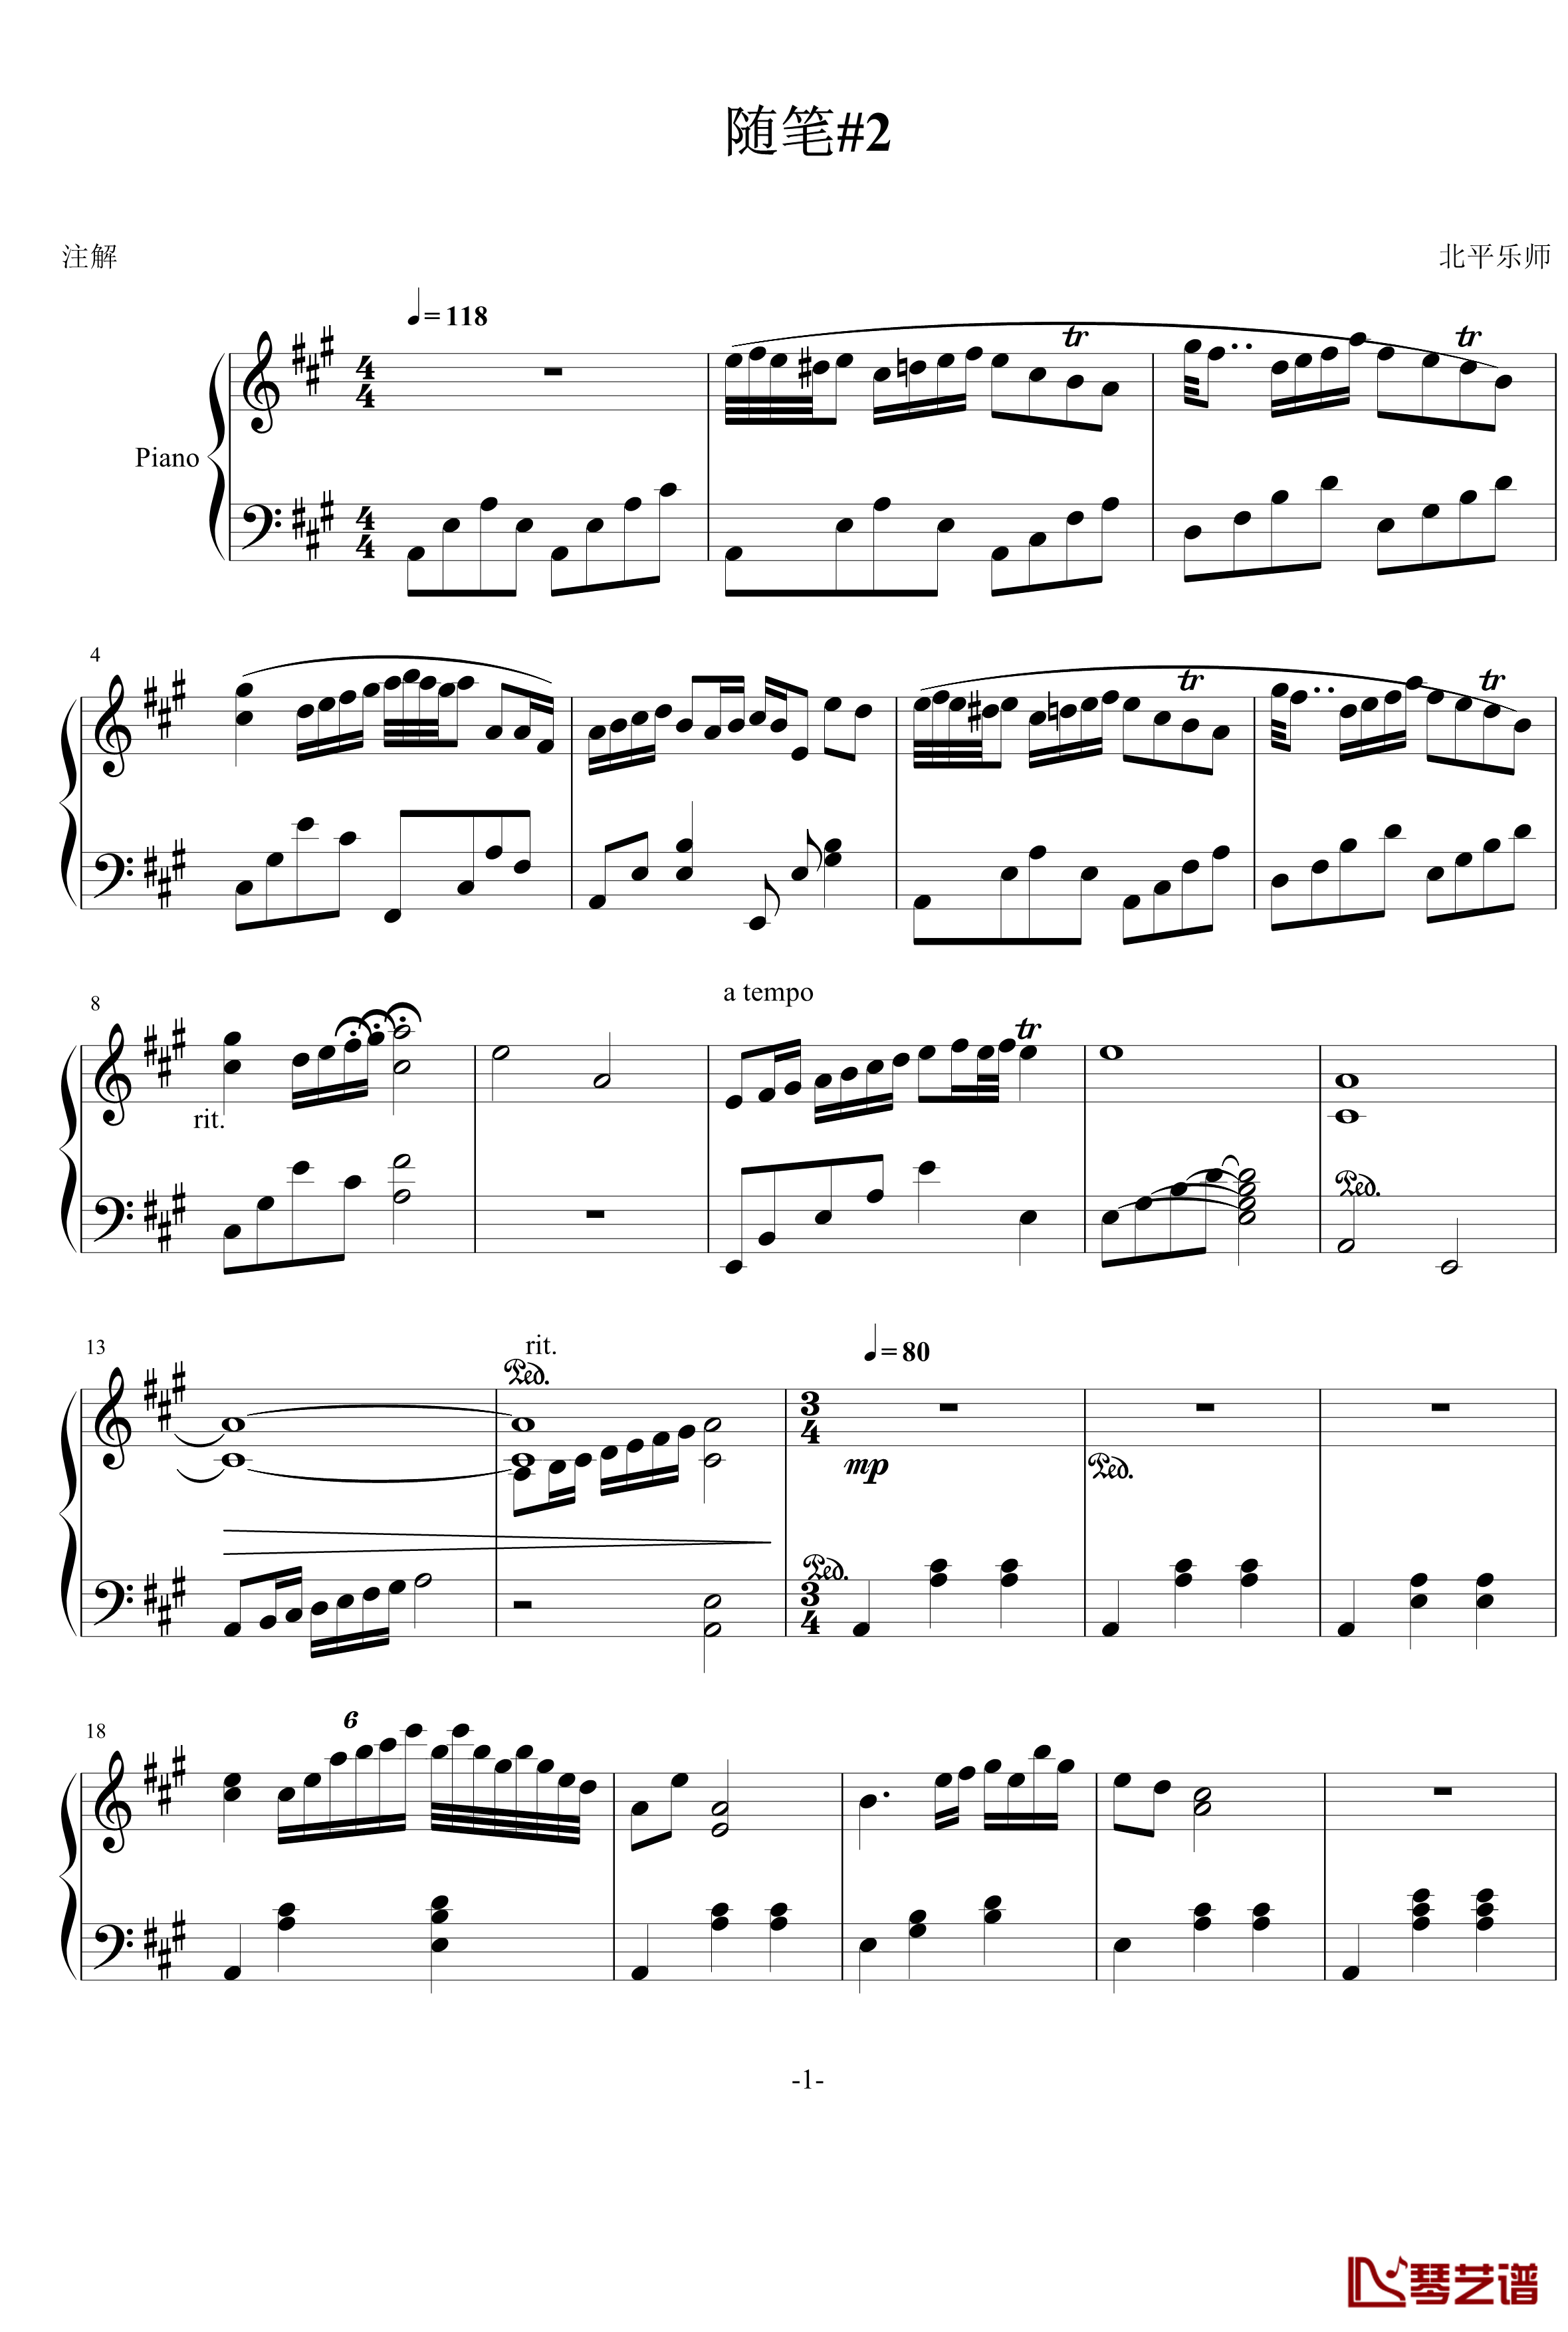 随笔2钢琴谱-北平乐师1